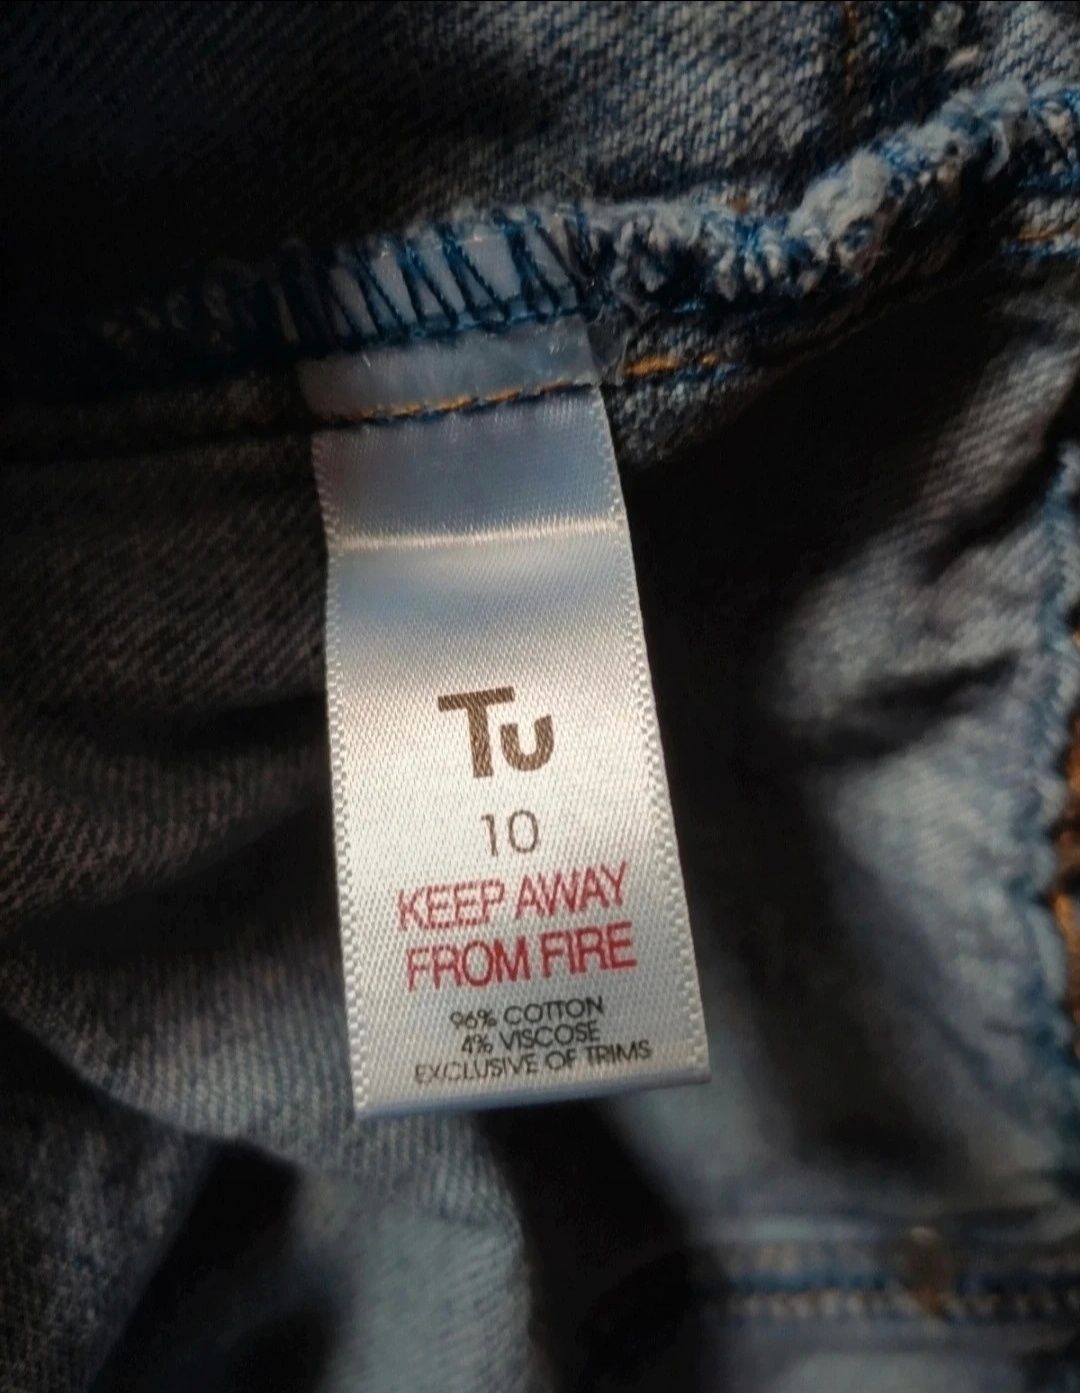 Spódnica jeansowa TU rozmiar M